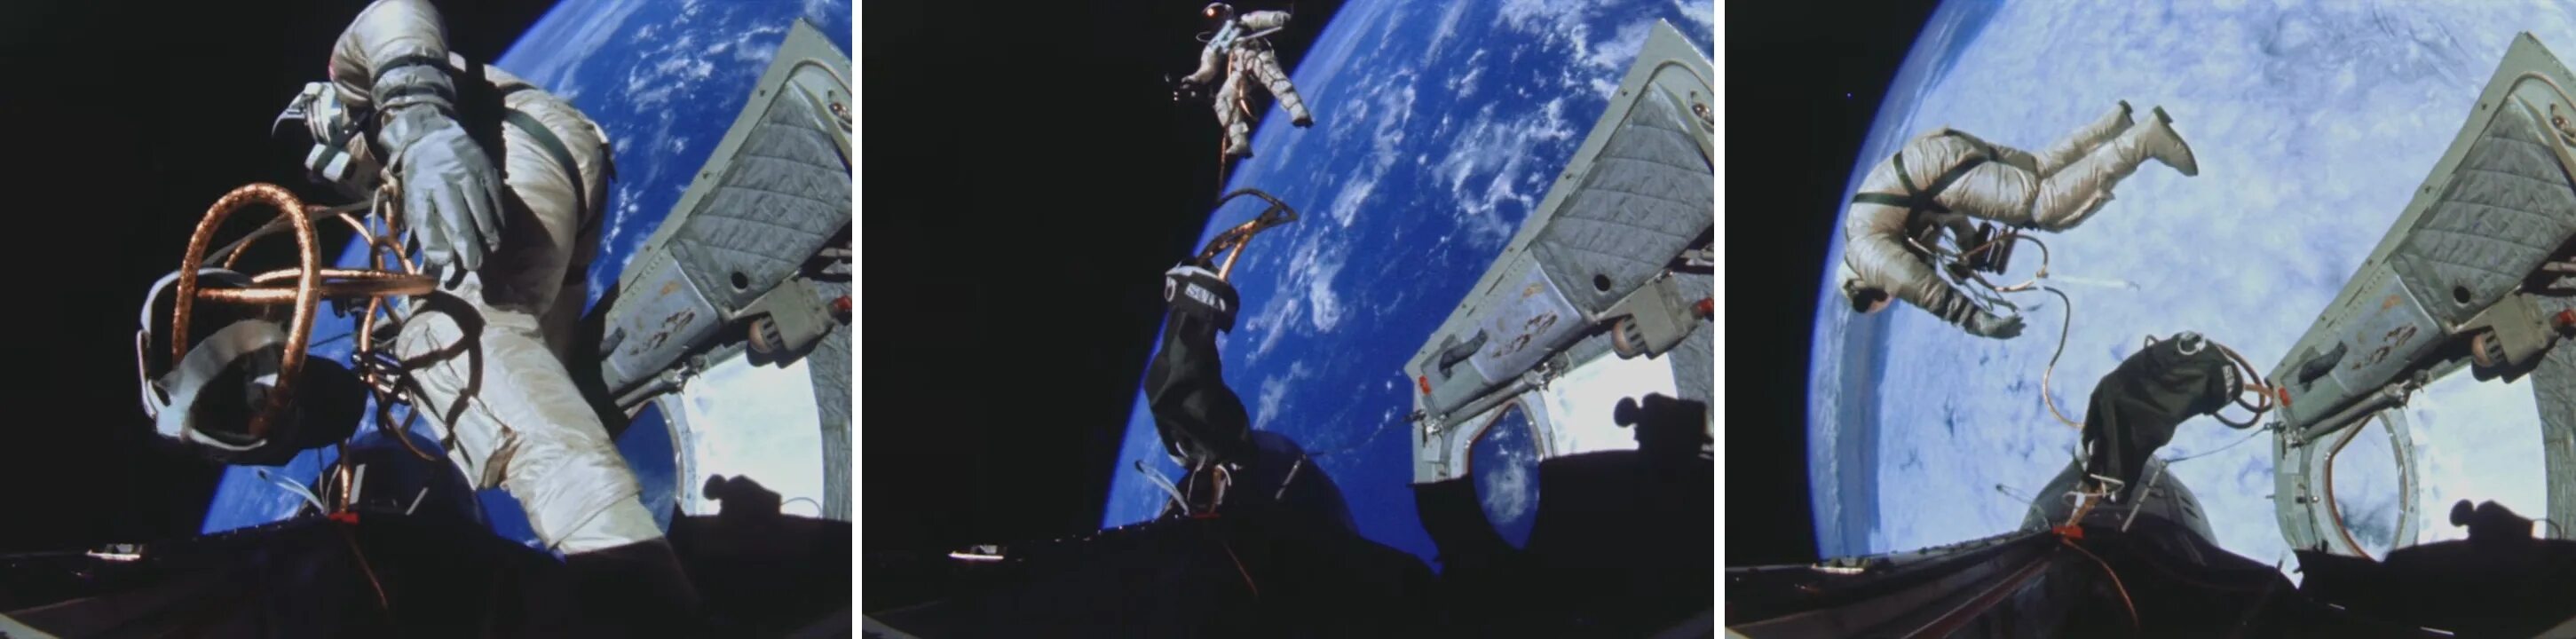 Выход в открытый космос Леонова 1965. Выход Алексея Леонова в открытый космос. Леонов космонавт в космосе Союз Аполлон.